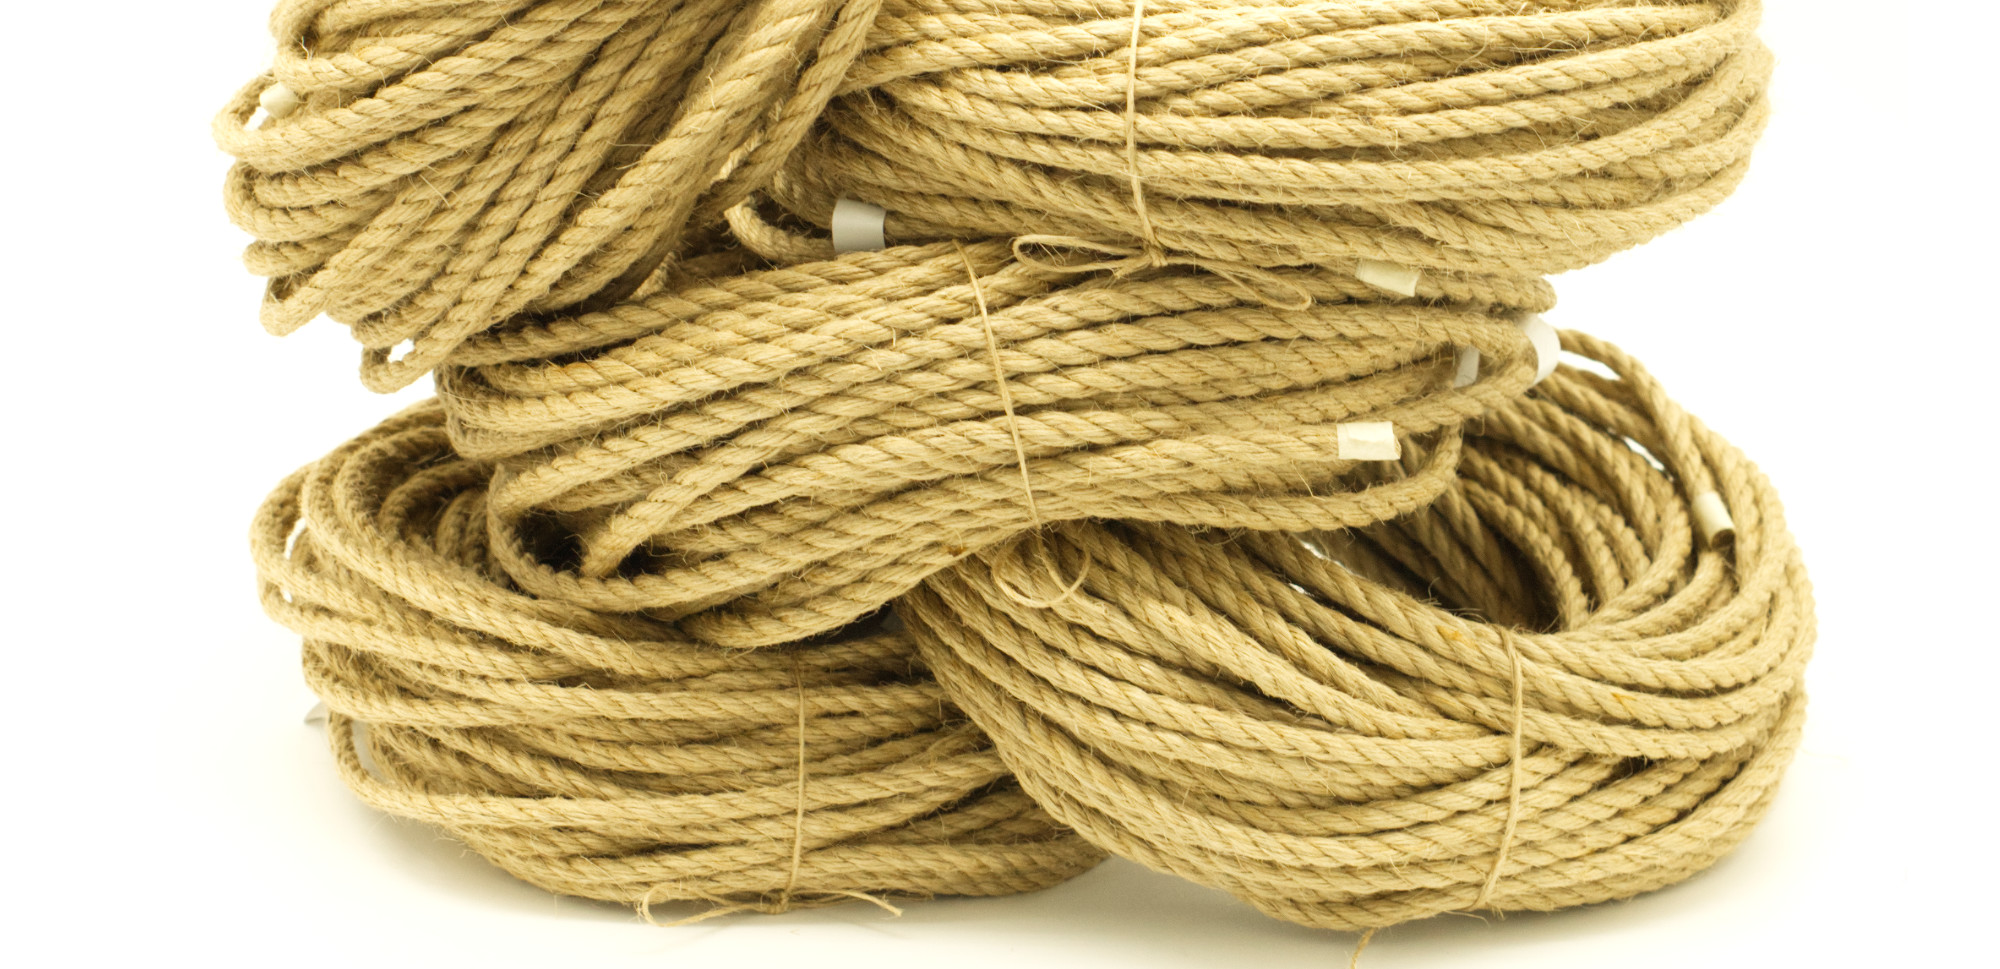 Buy 25m of raw jute rope for DIY processing – raw Shibari rope